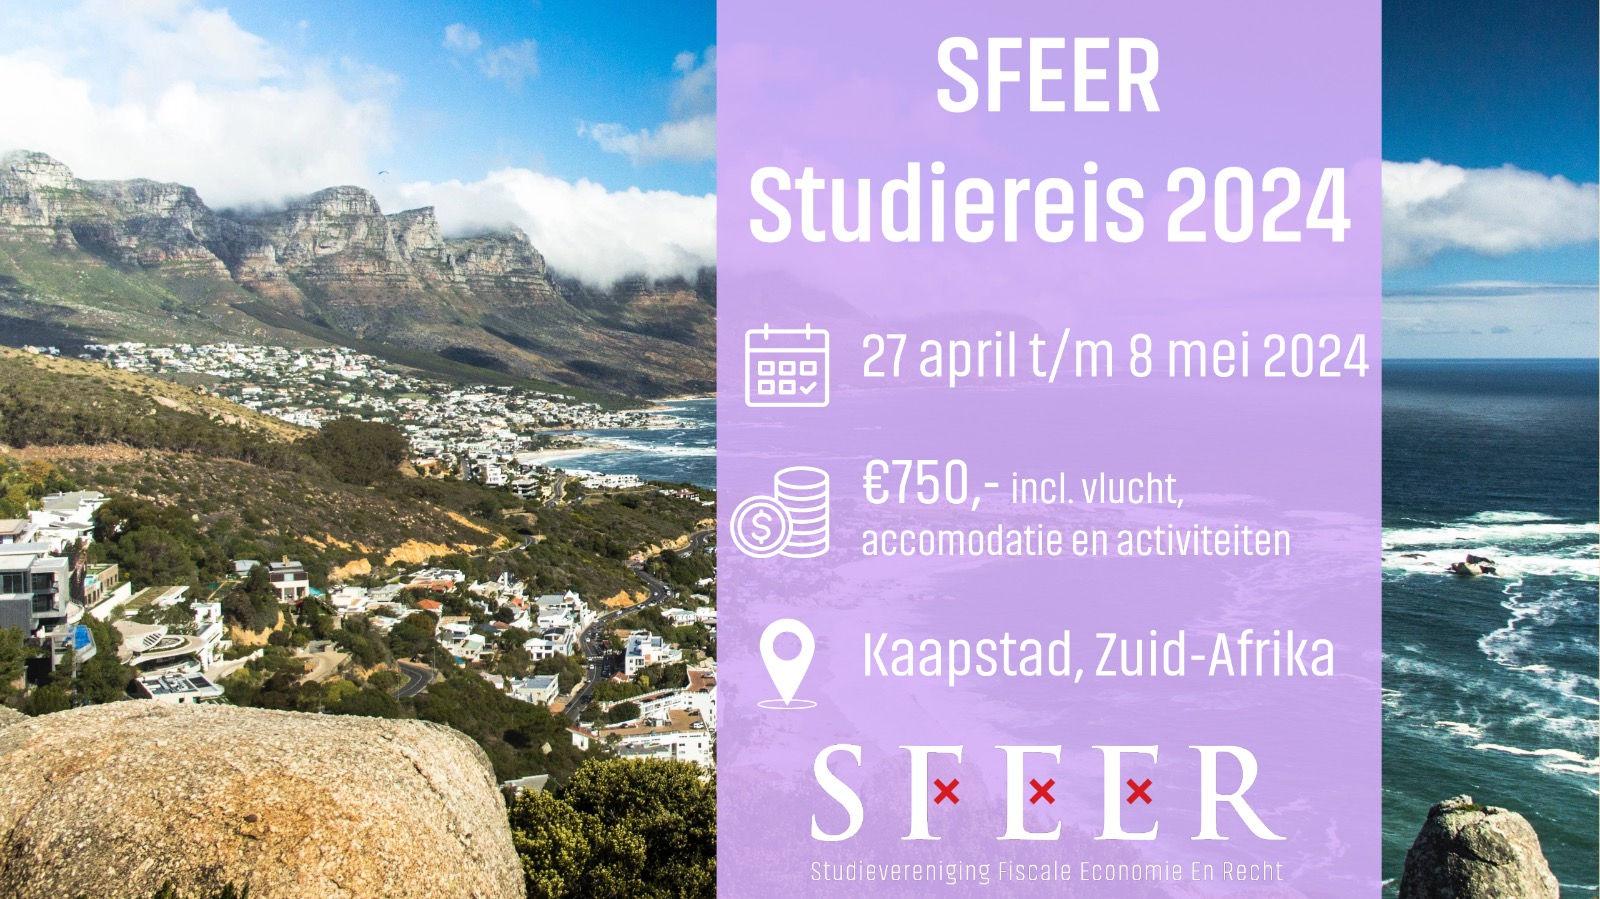 Studiereis 2024: Kaapstad, Zuid-Afrika!